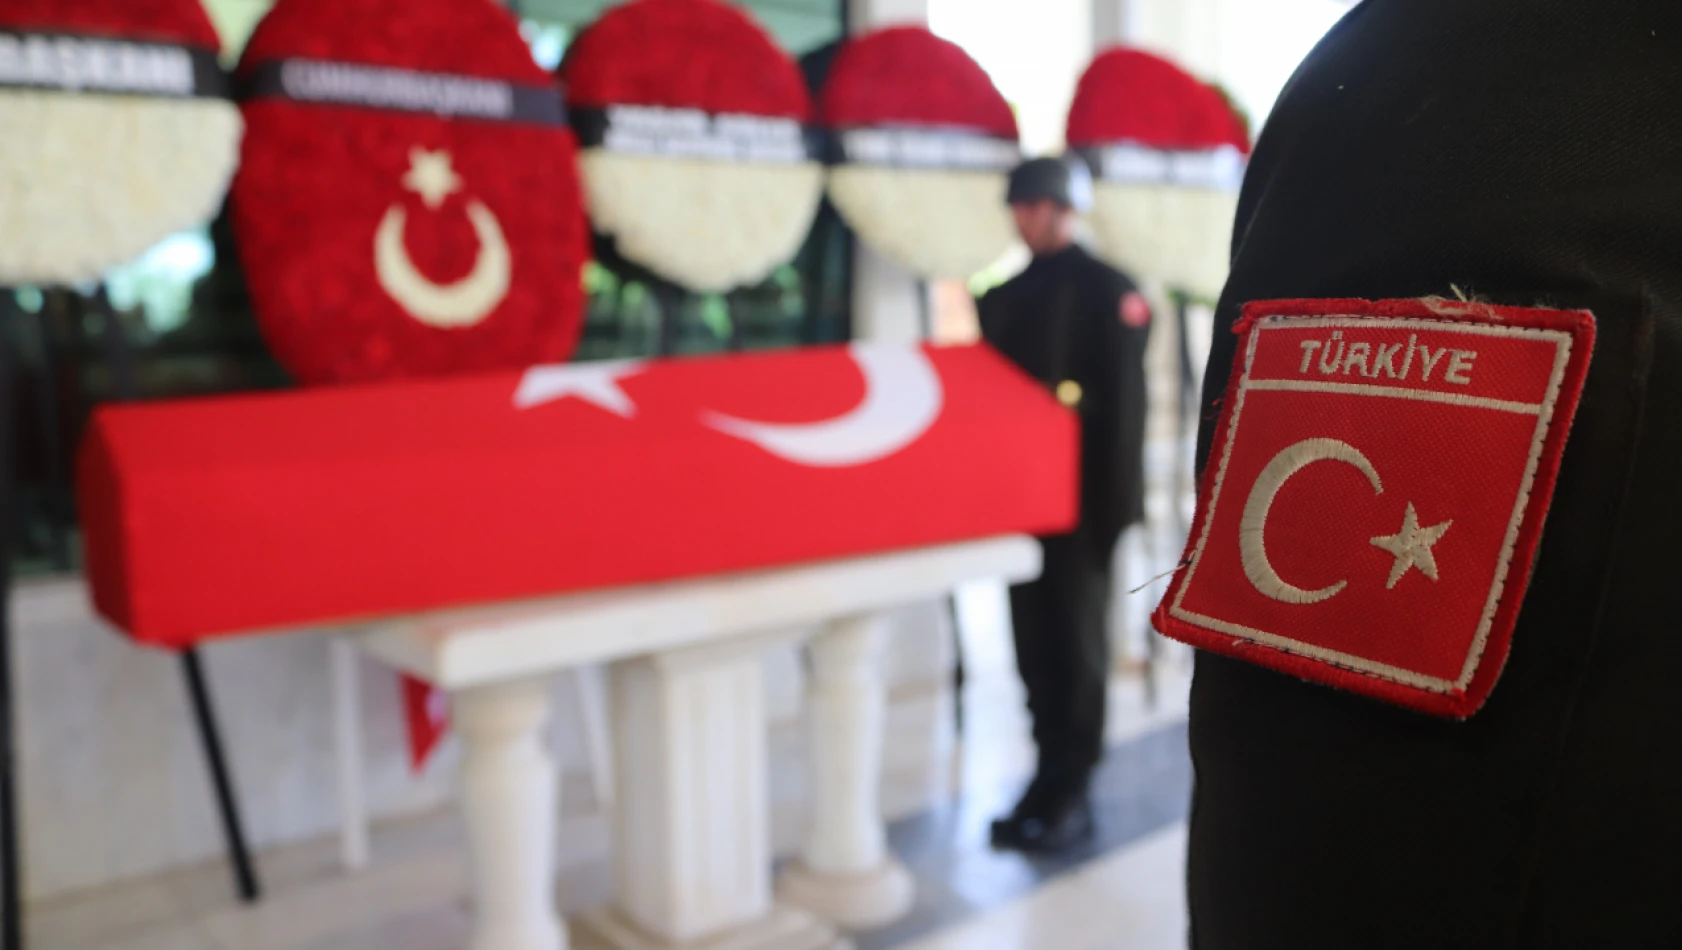 Kayseri'de Şehit Olan Albay Memleketinde Toprağa Verildi